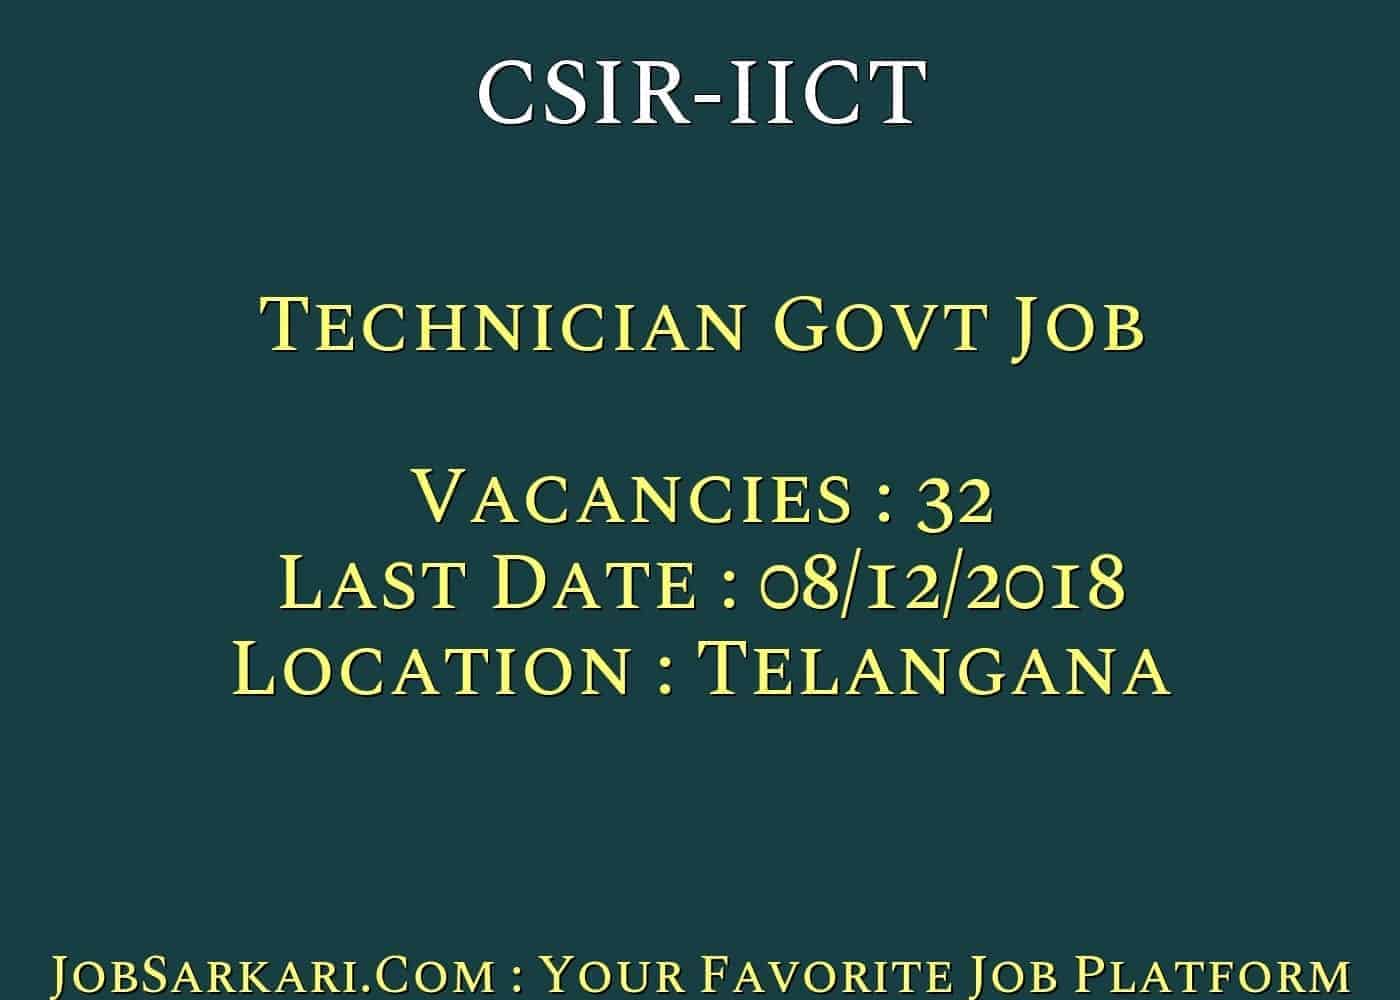 CSIR-IICT Recruitment 2018 For Technician Govt Job